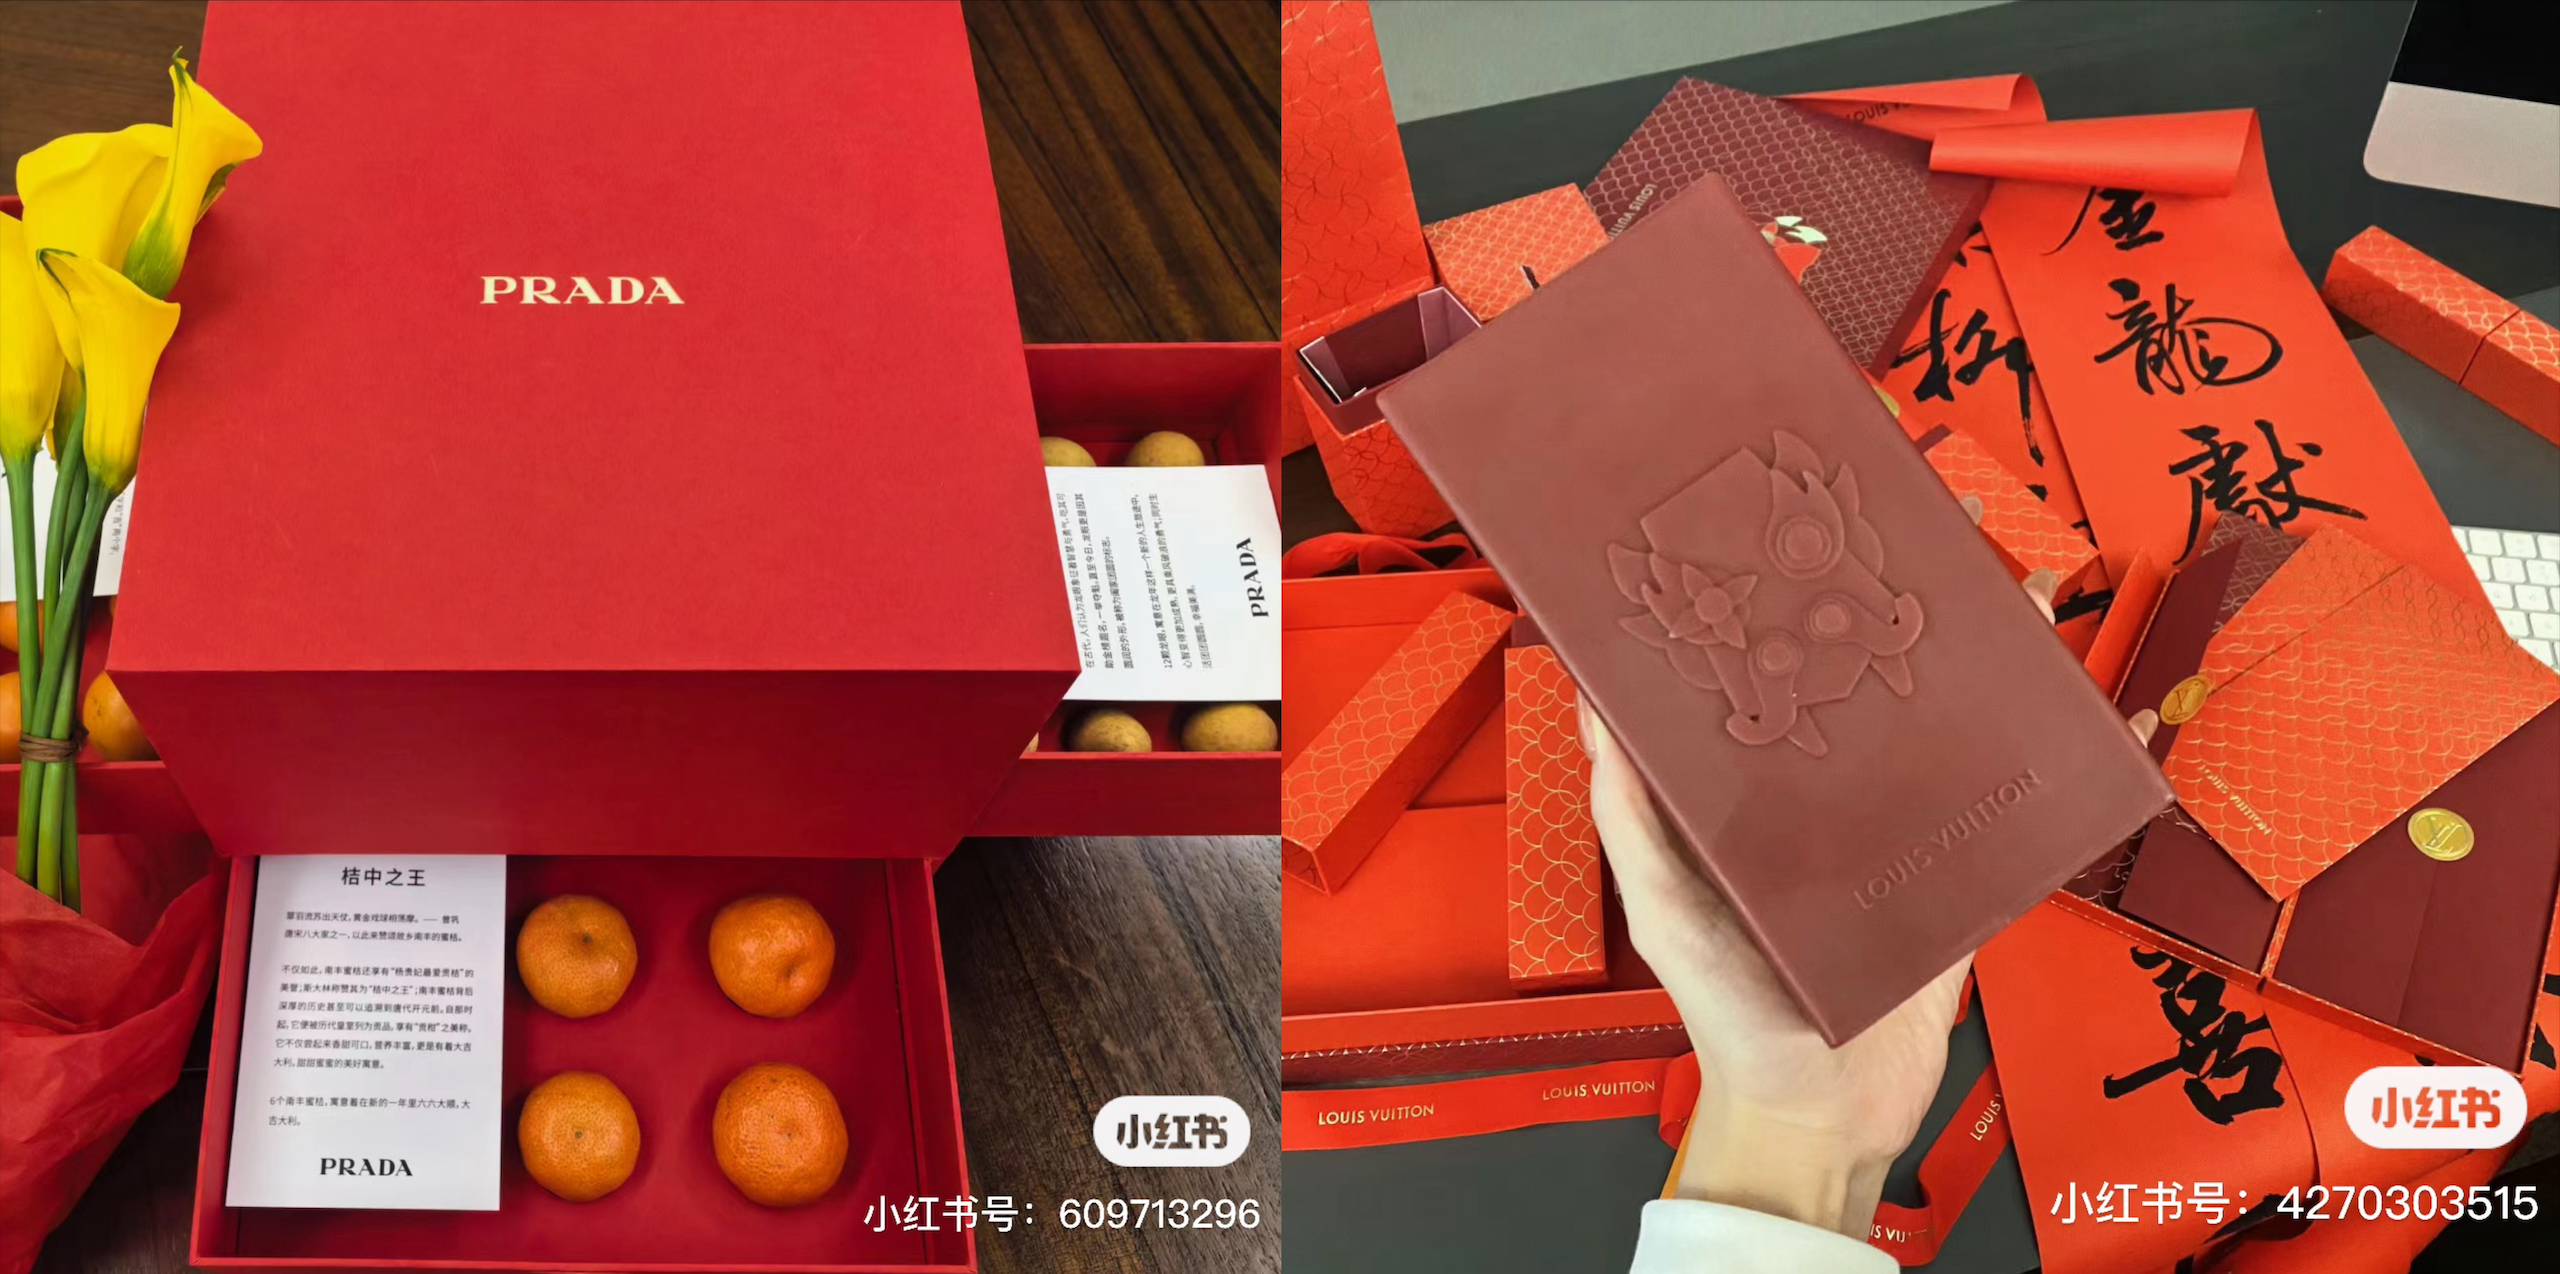 Prada and Louis Vuitton’s VIP red boxes. Image: Xiaohongshu screenshot